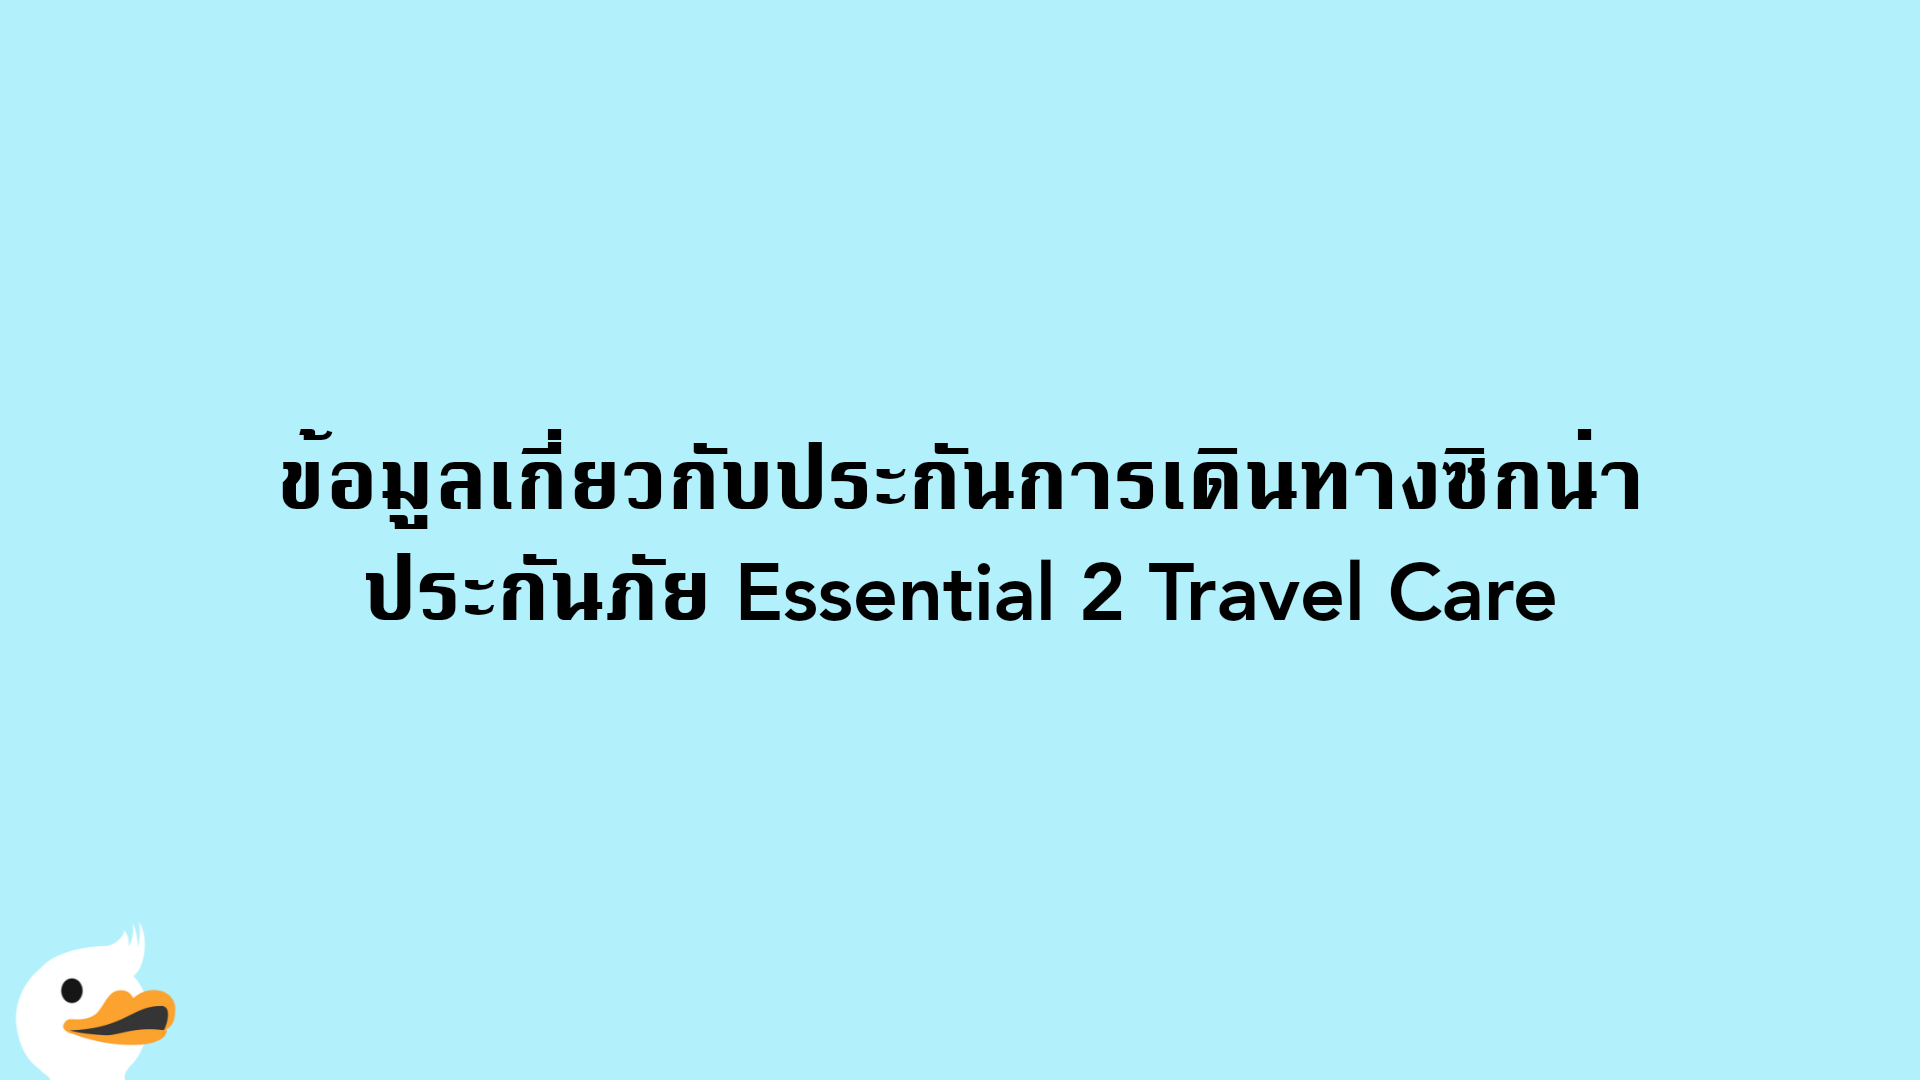 ข้อมูลเกี่ยวกับประกันการเดินทางซิกน่า ประกันภัย Essential 2 Travel Care